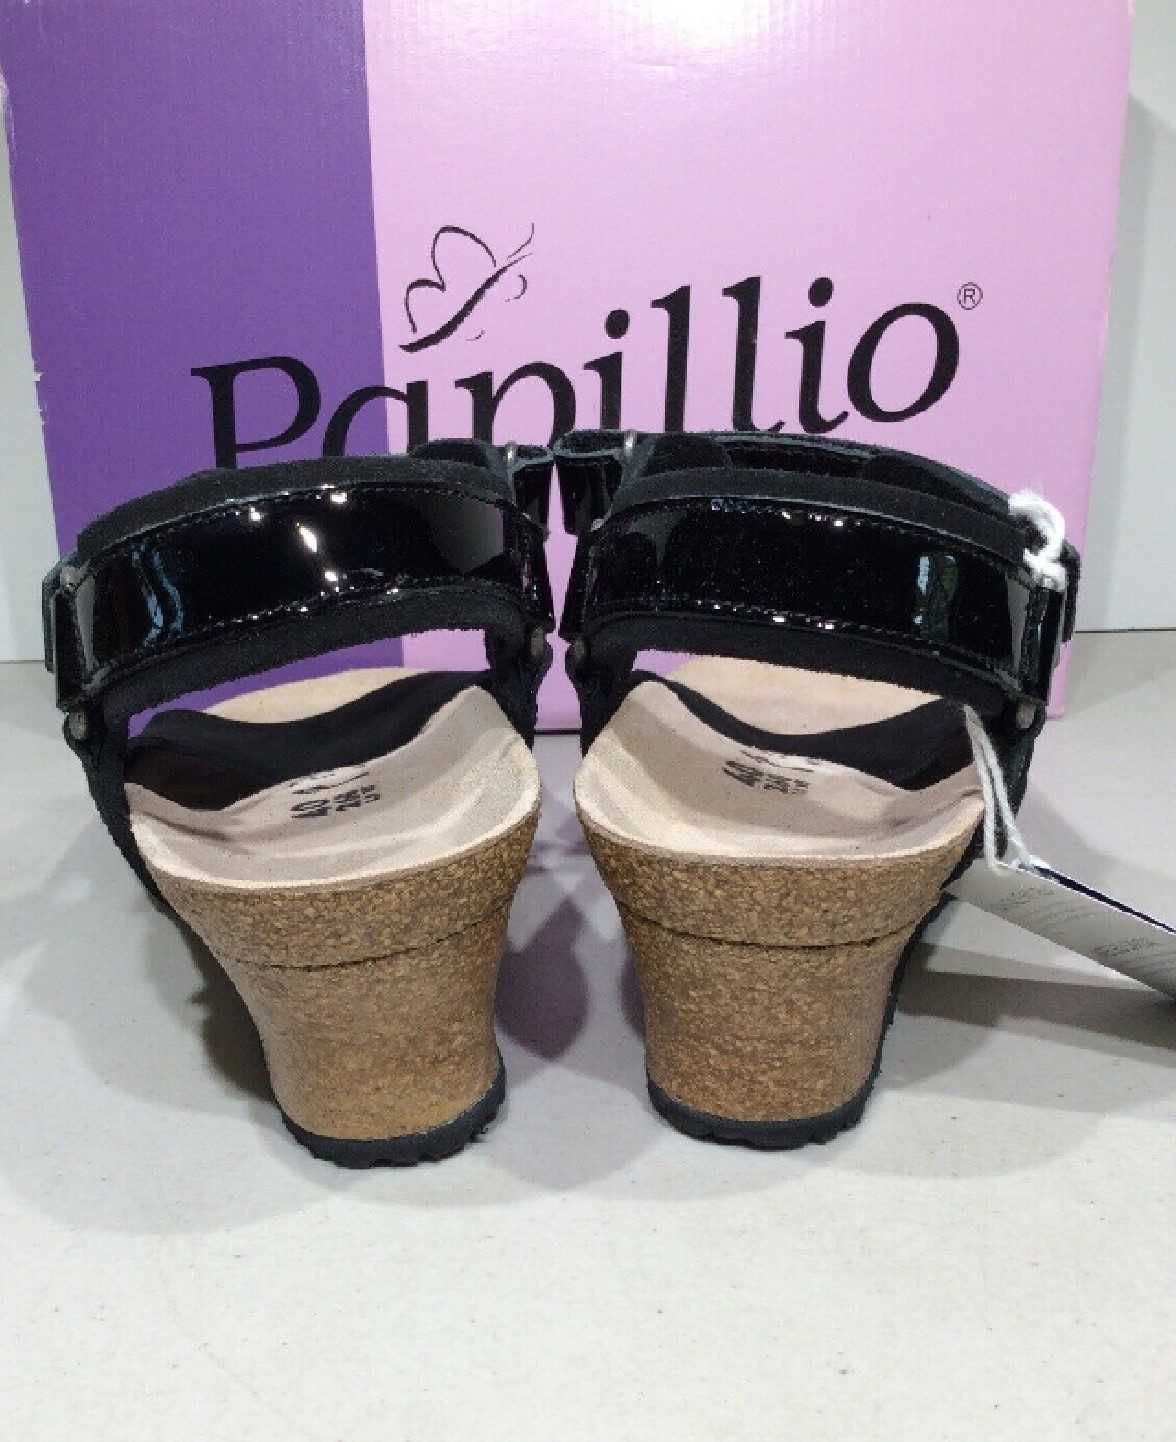 Дамски сандали Papillio Eve на Birkenstock на платформа – НОВИ, № 40